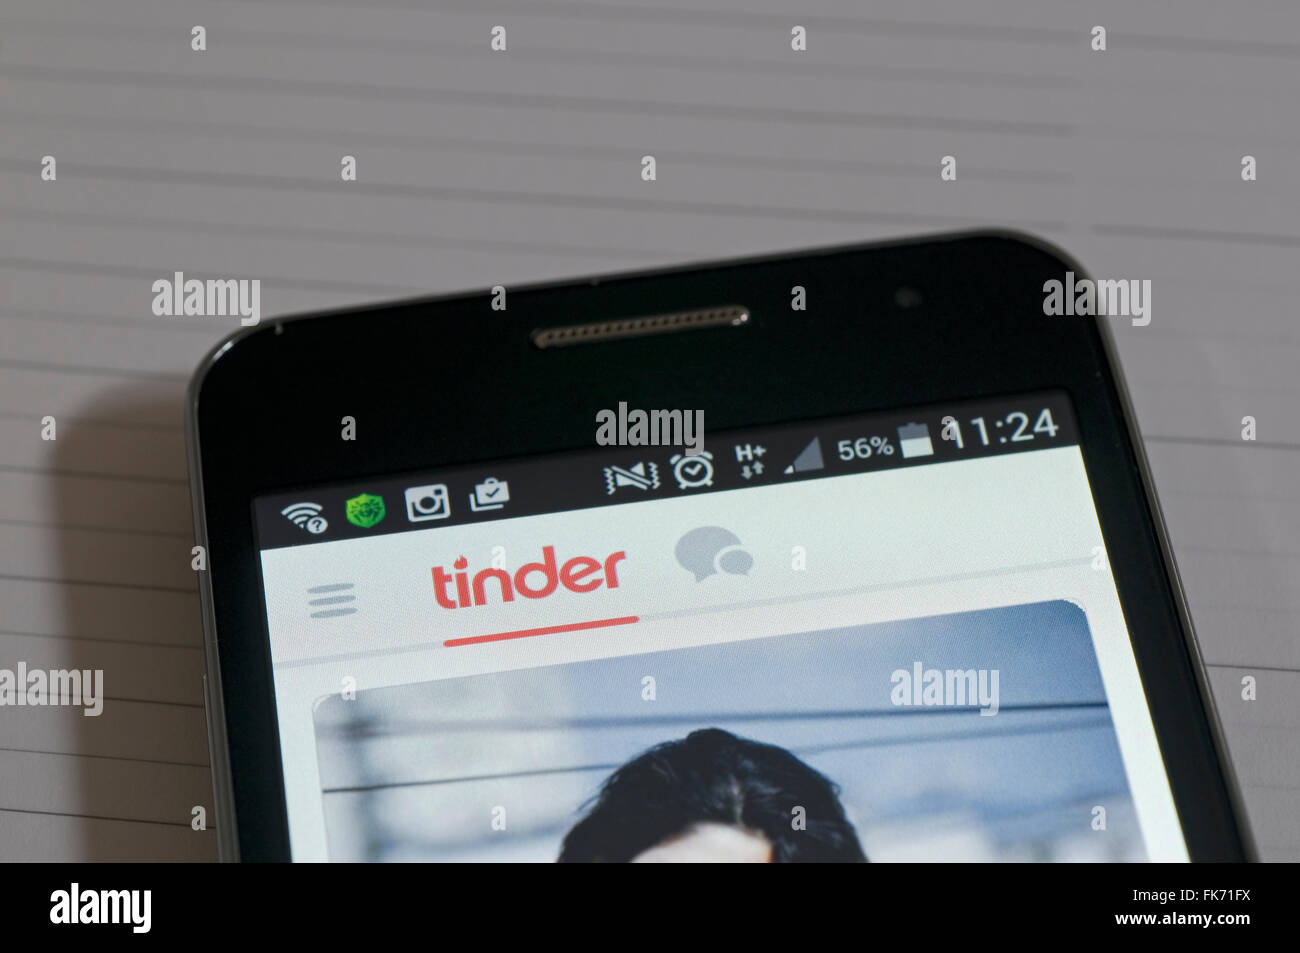 L'Amadou dating app sur smartphone Banque D'Images